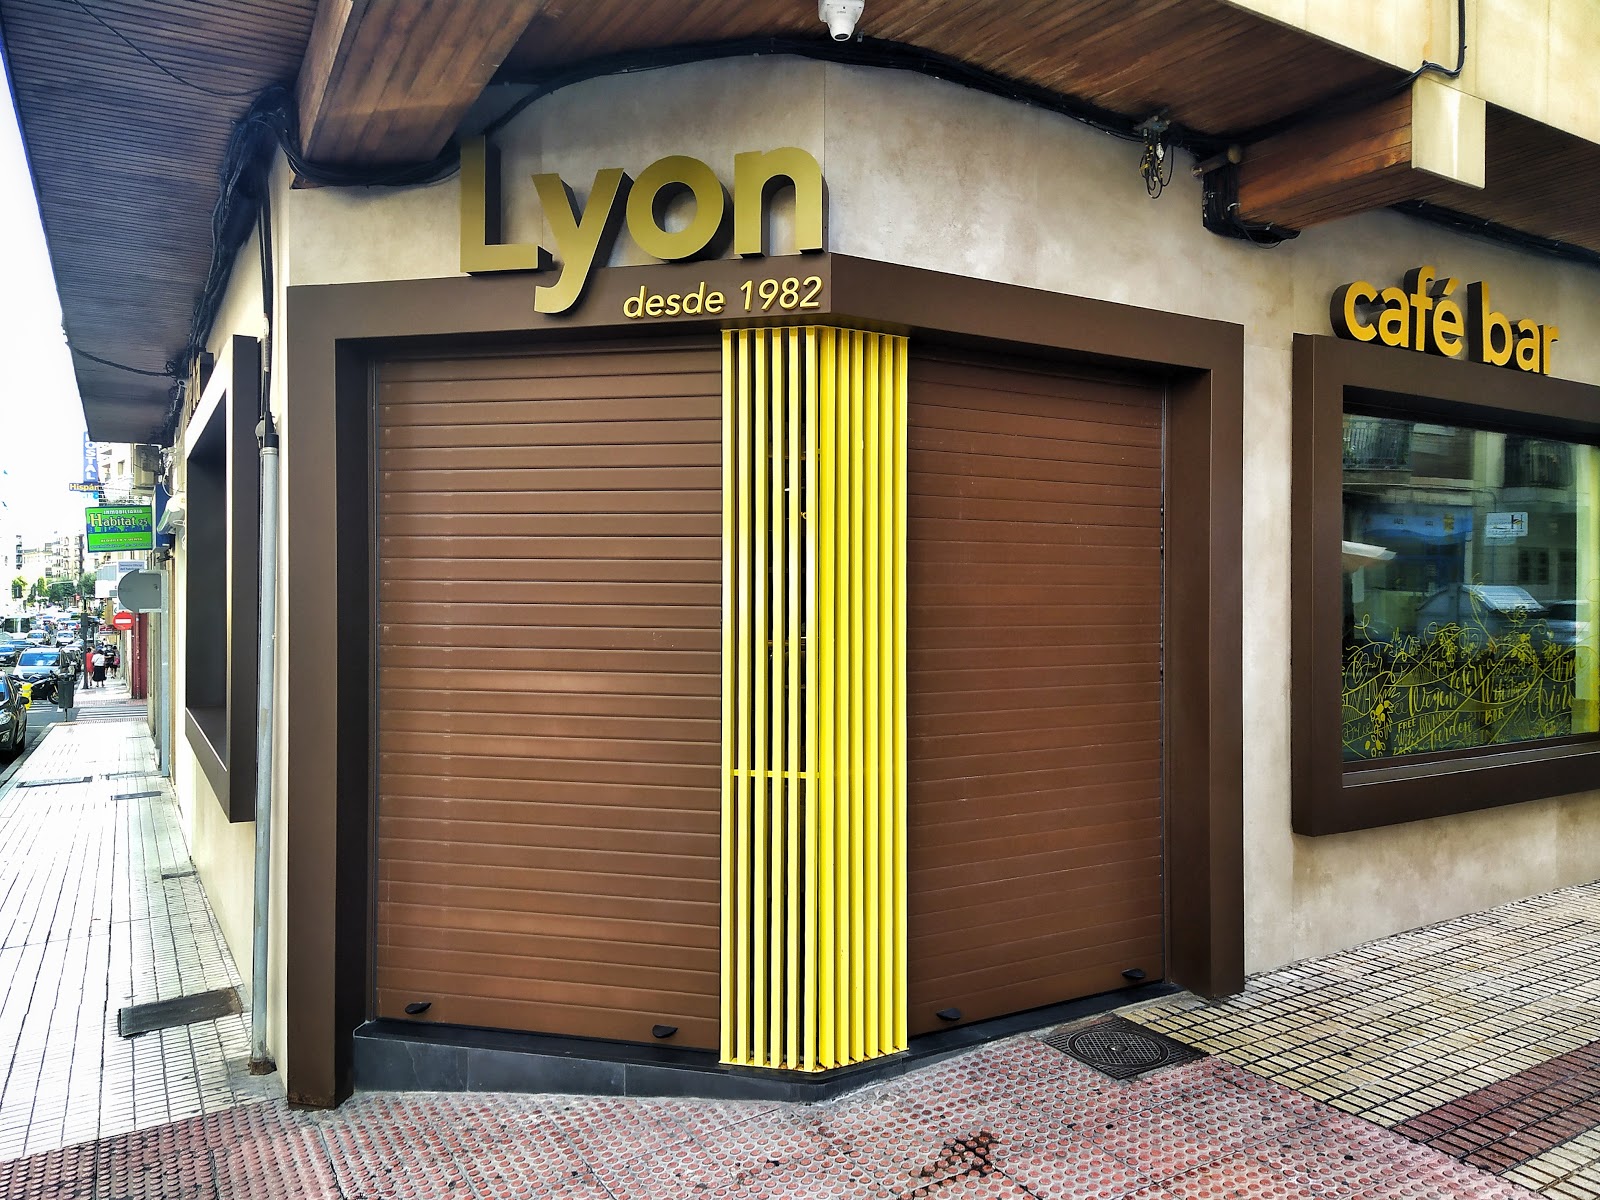 Bar Lyon